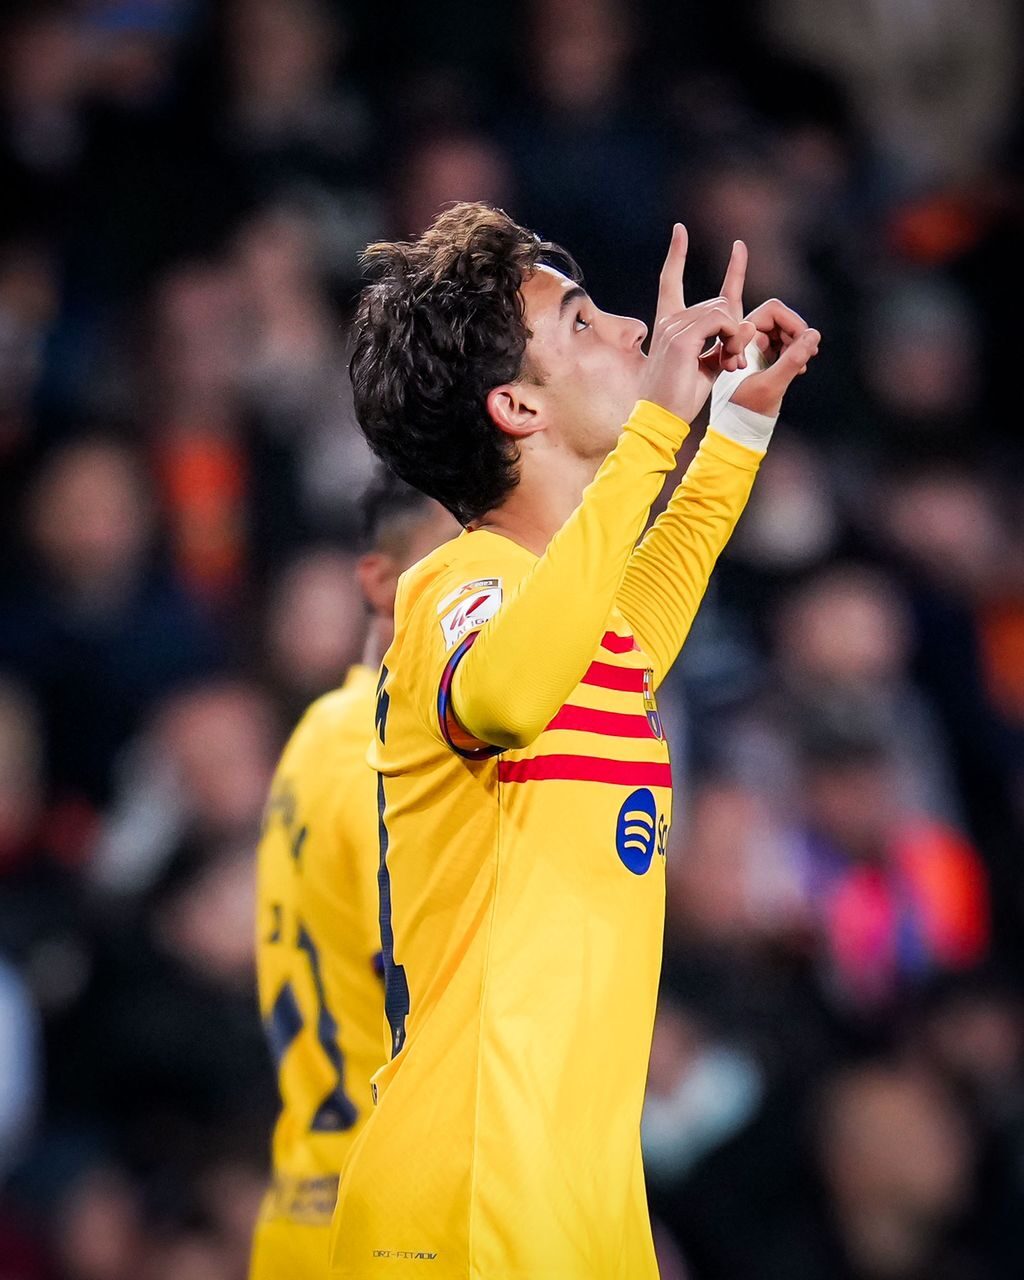 VIDEO : BUUTT du Barça ! La passe de De Jong et la finition parfaite de Joao Felix pour l'ouverture du score face à Valence 